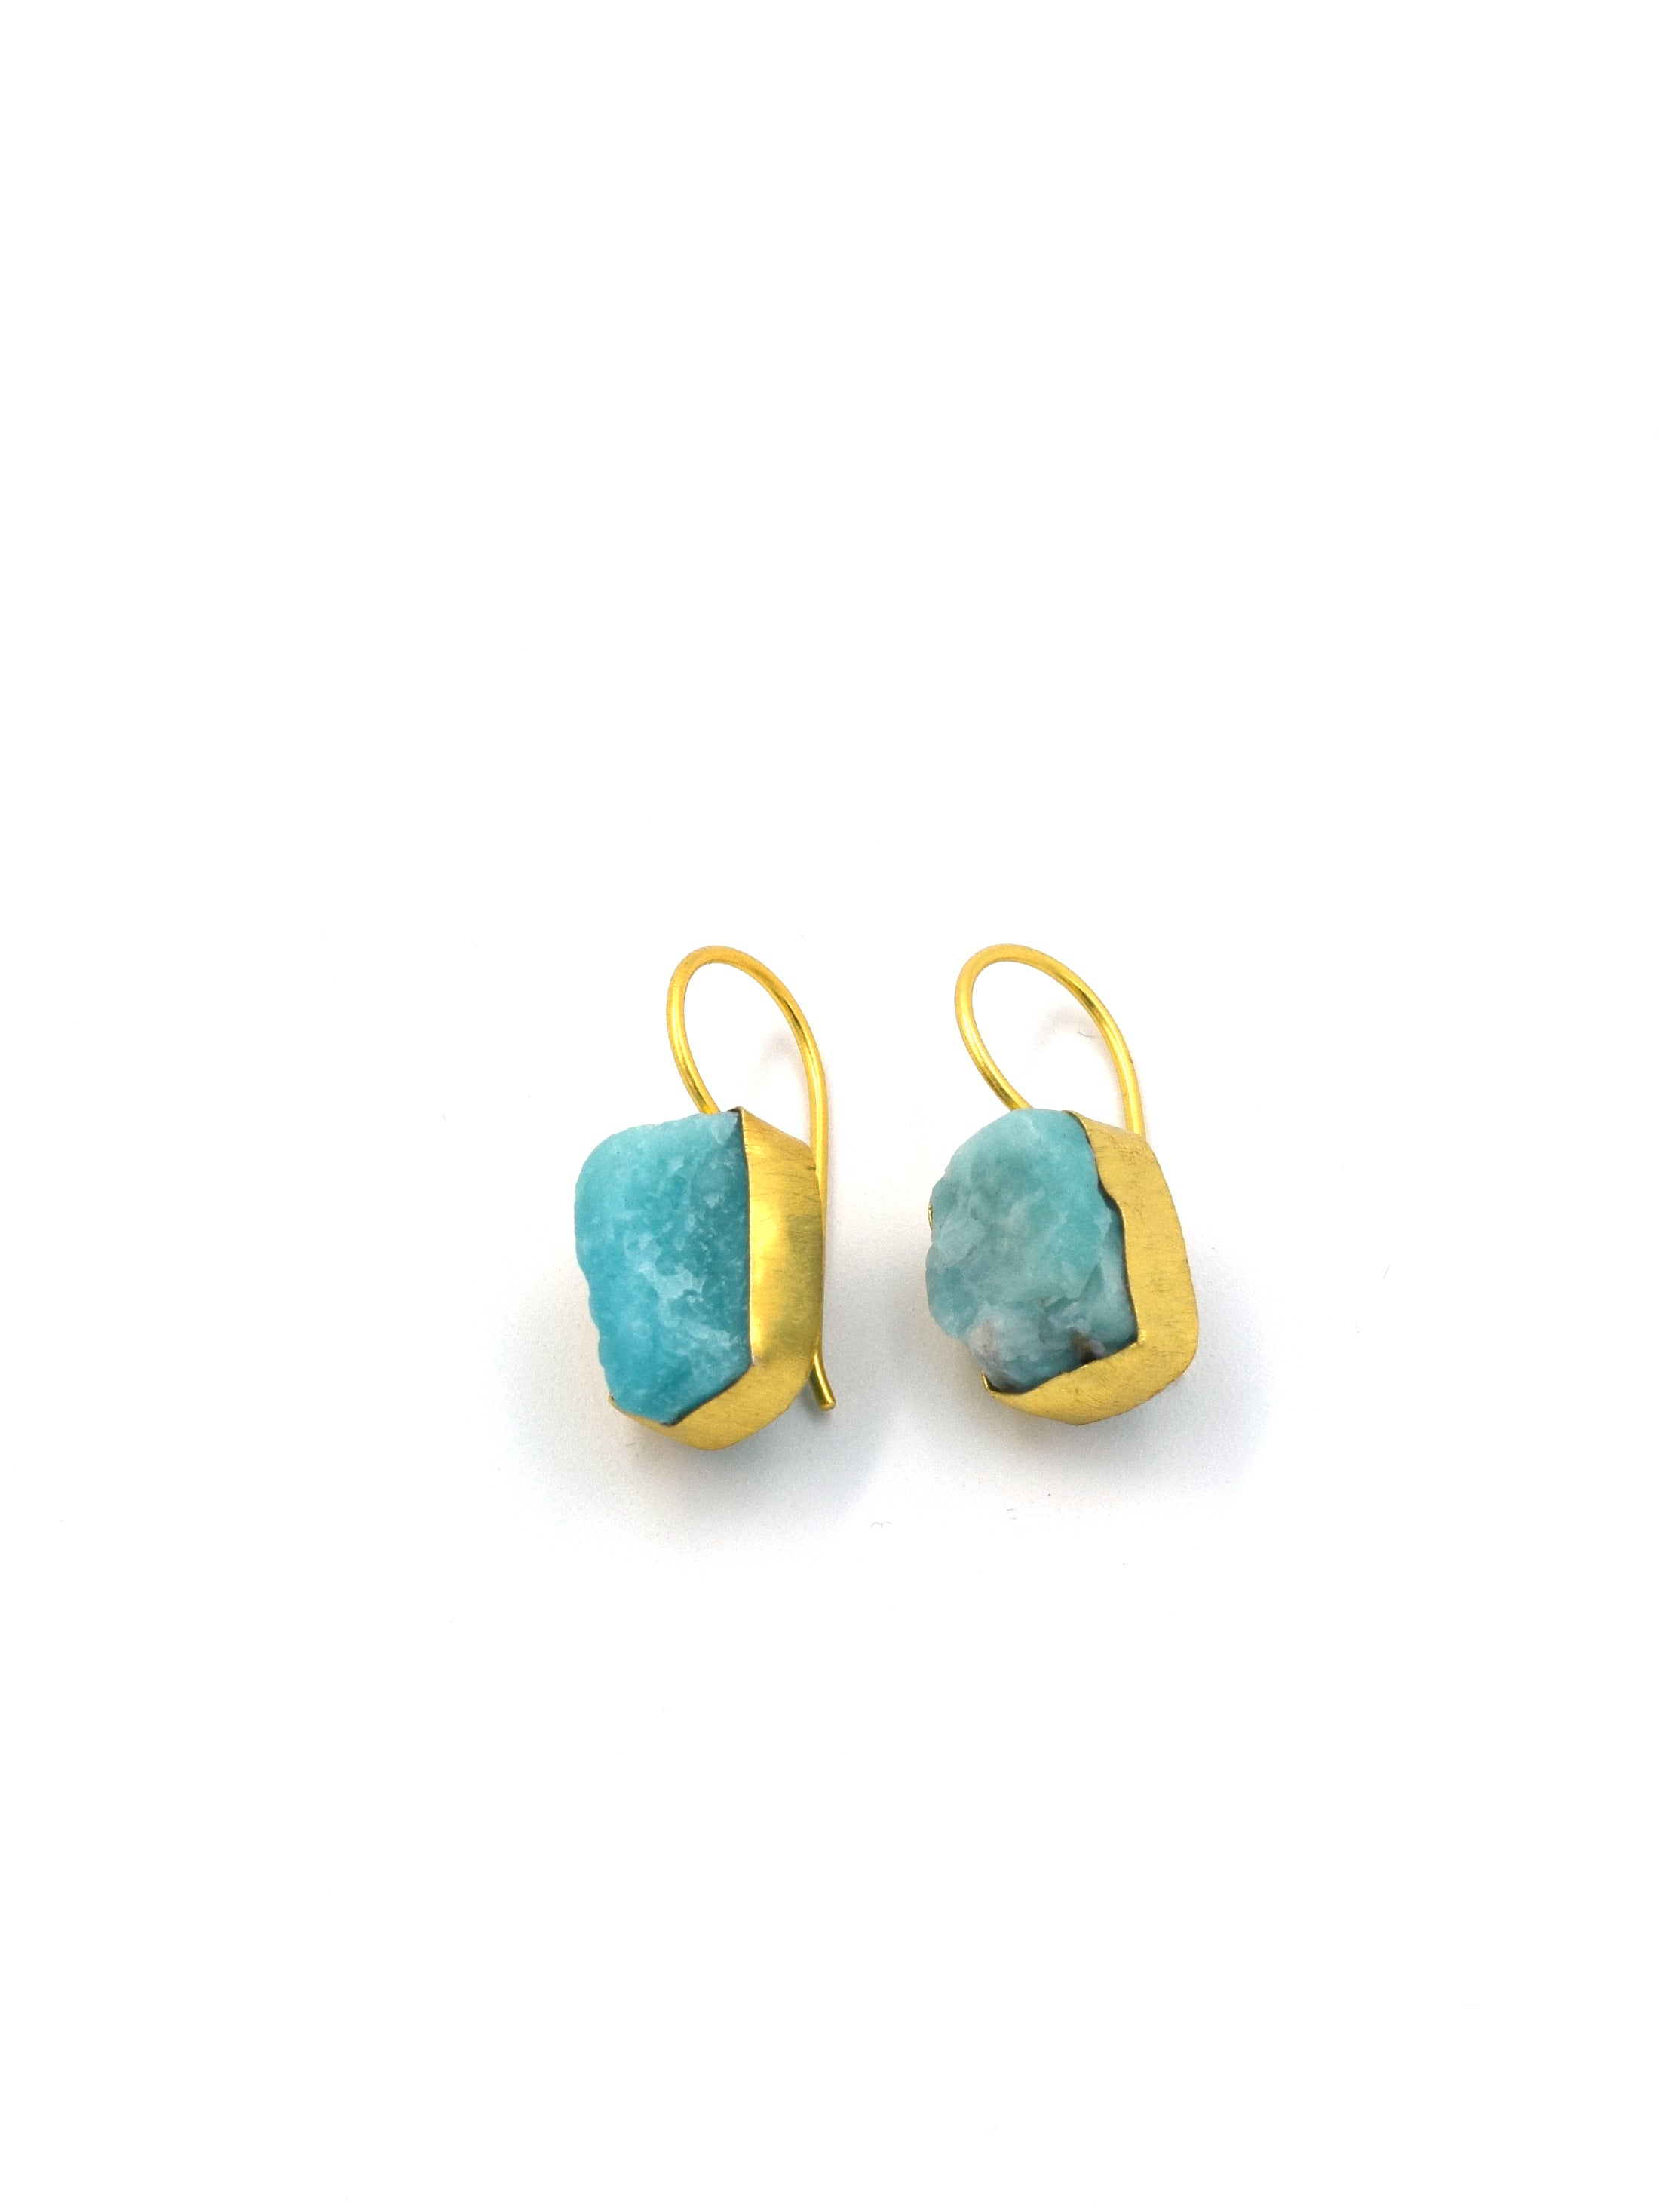 Small single semi precious stone drop earrings